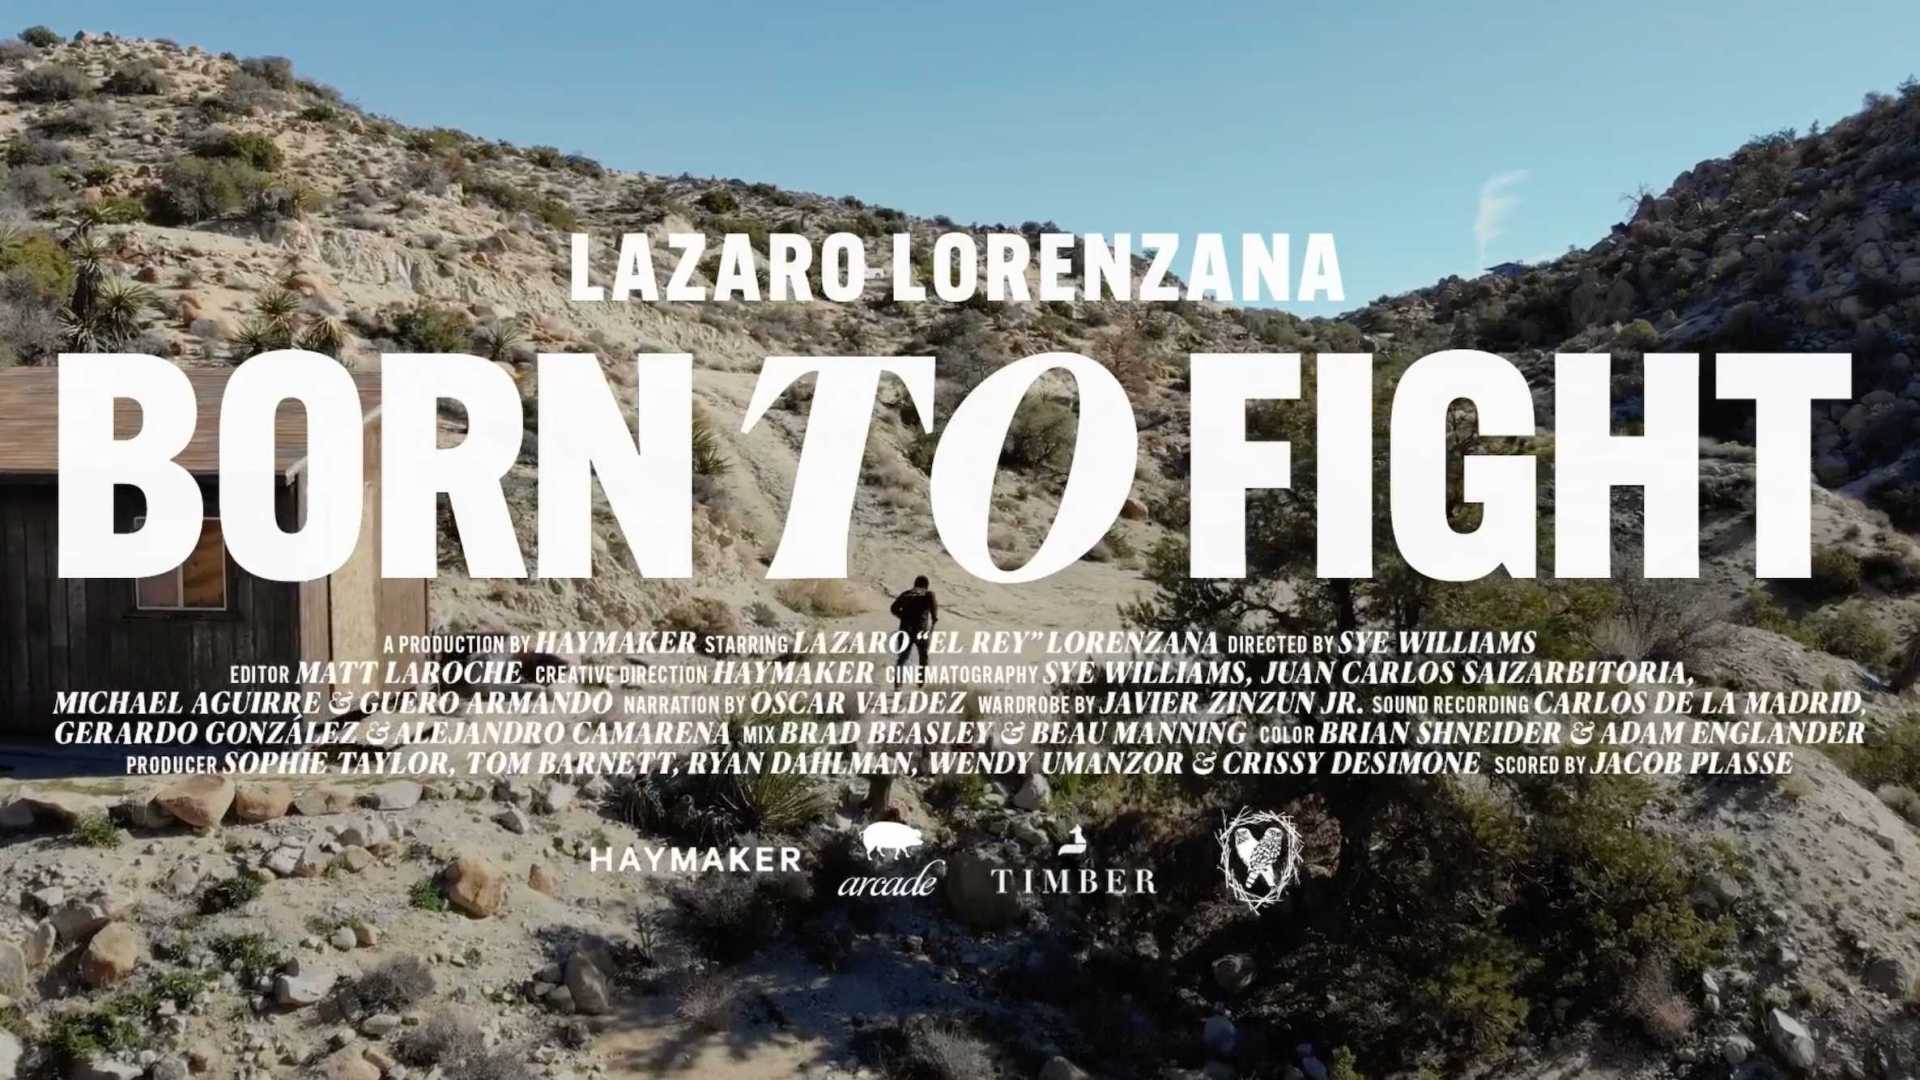 墨西哥拳击传奇人物奥斯卡-瓦尔迪兹纪实短片《生而为战》